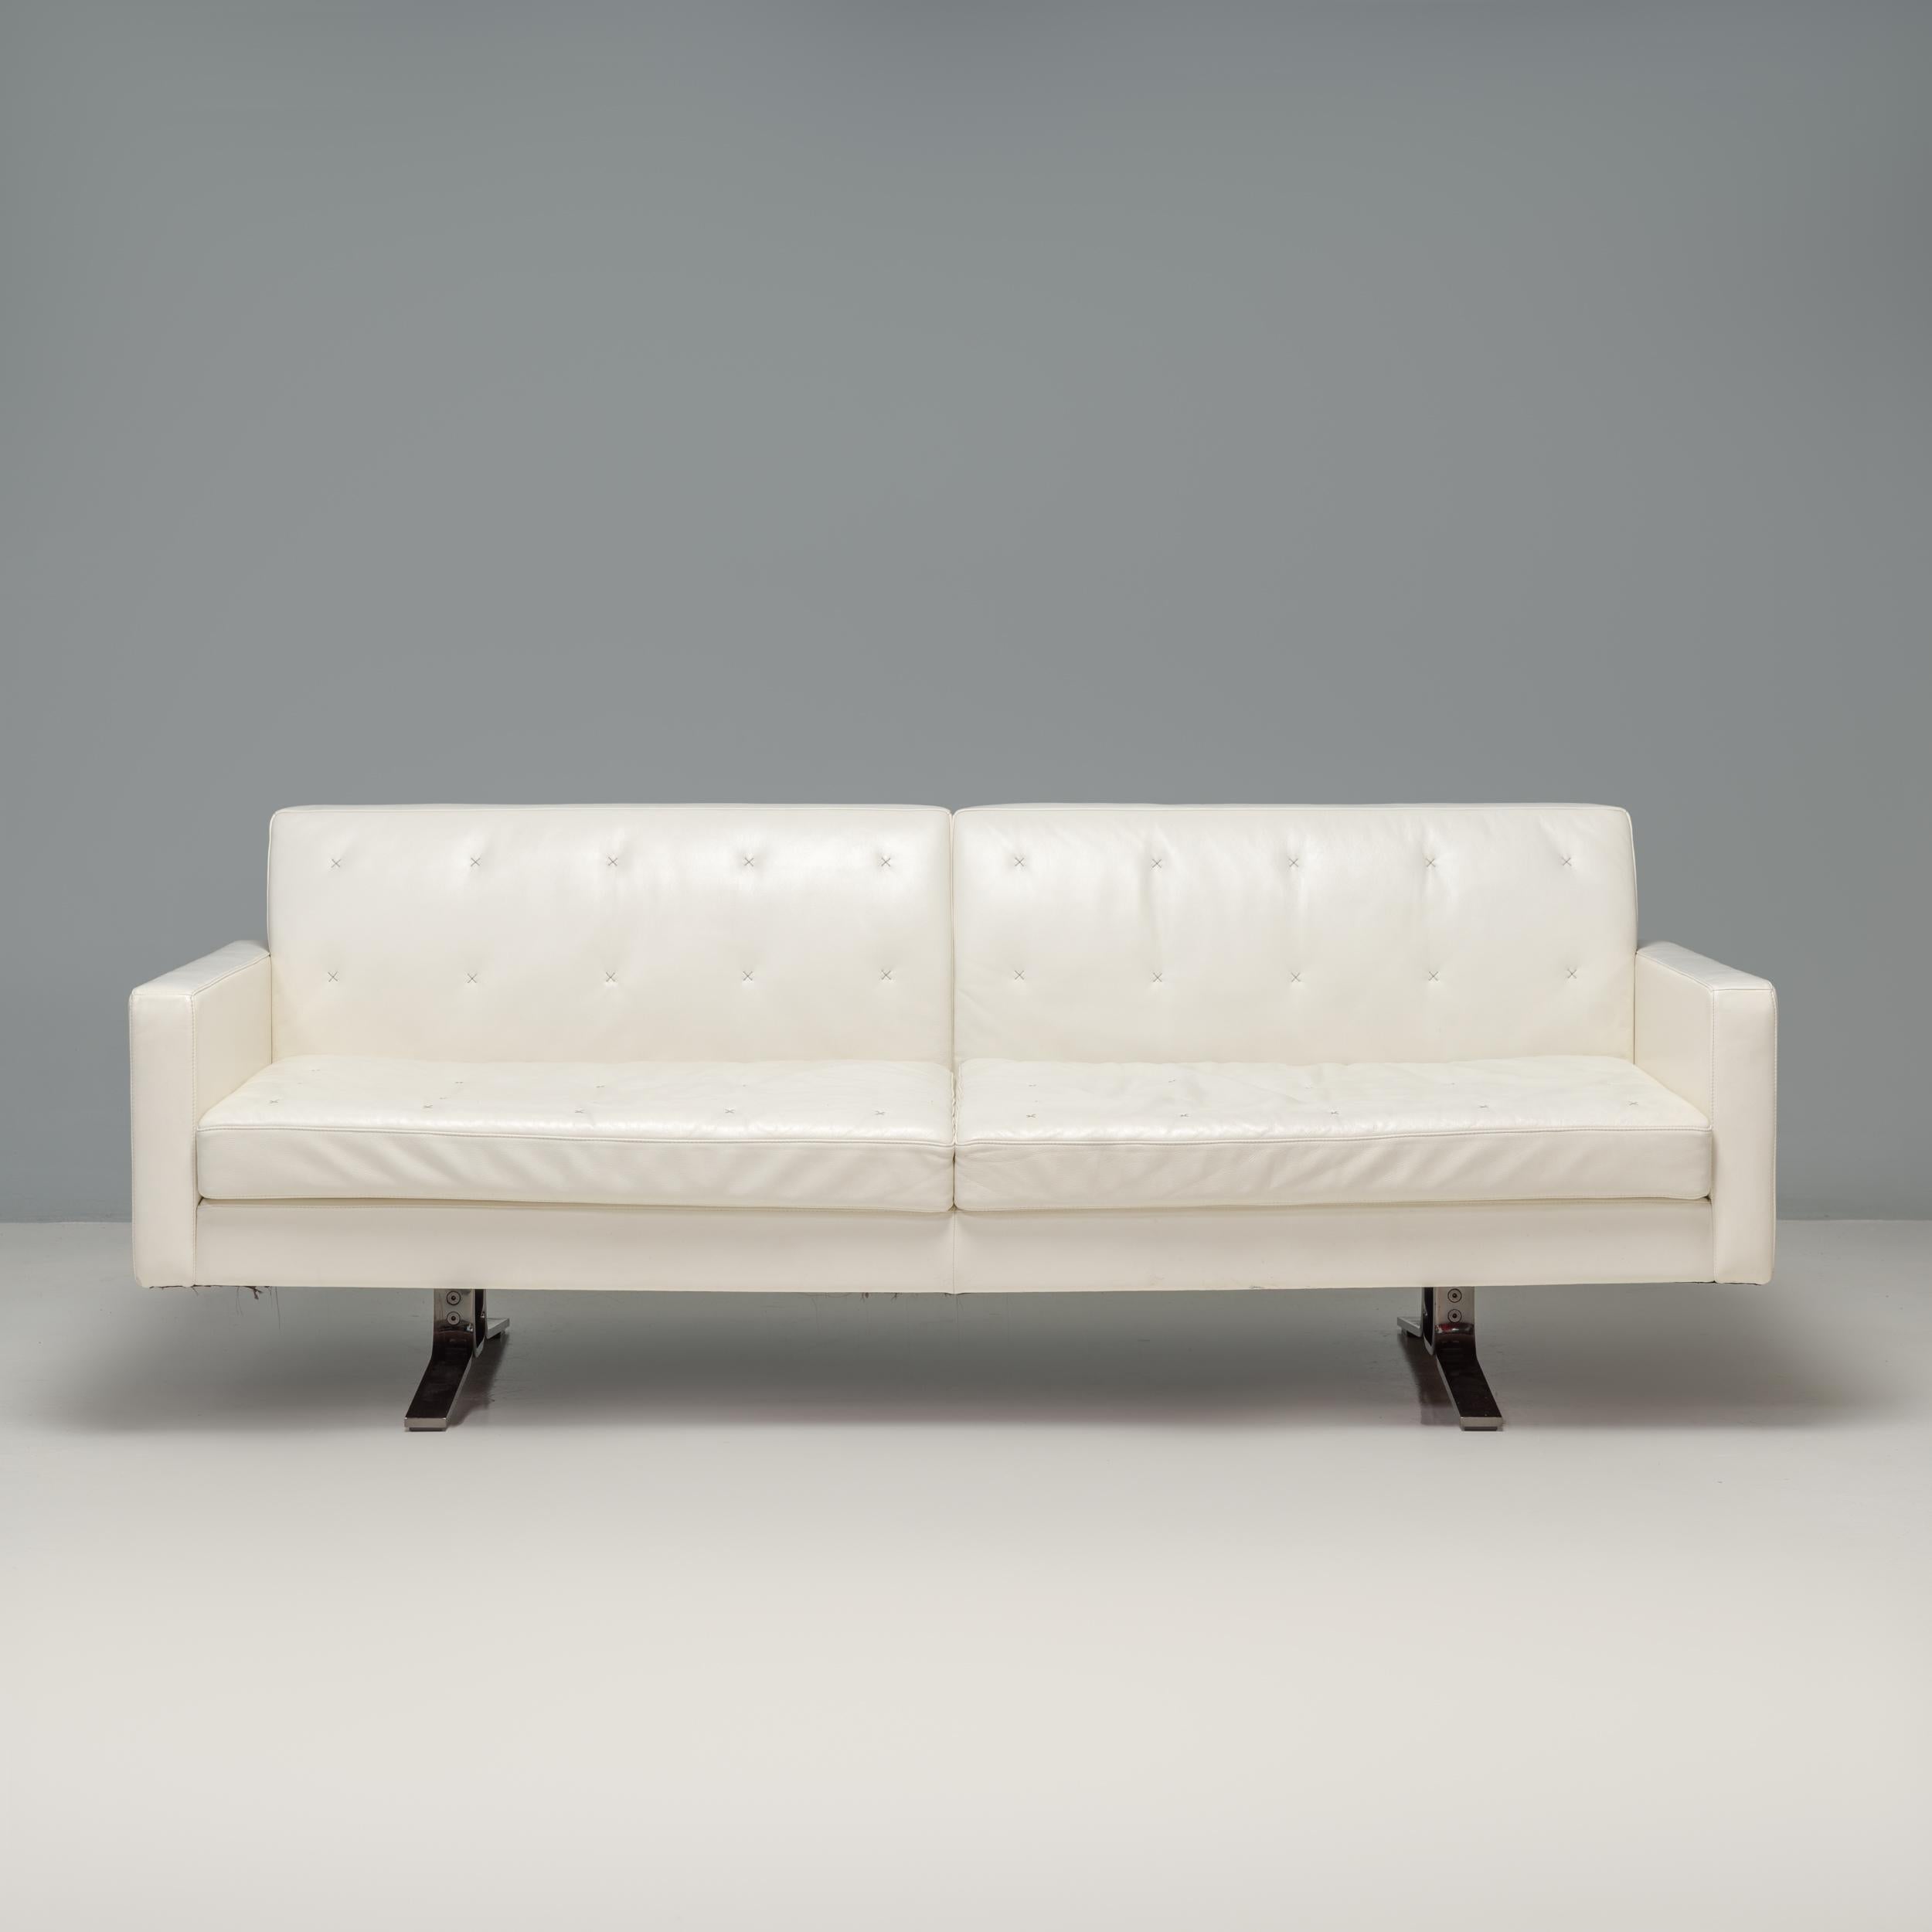 Das Kennedee Sofa wurde 2006 von Jean-Marie Massaud für Poltrona Frau entworfen und ist ein fantastisches Beispiel für modernes italienisches Design.

Das aus einem massiven Buchenholzrahmen gefertigte Sofa ist vollständig mit weißem Panna 51